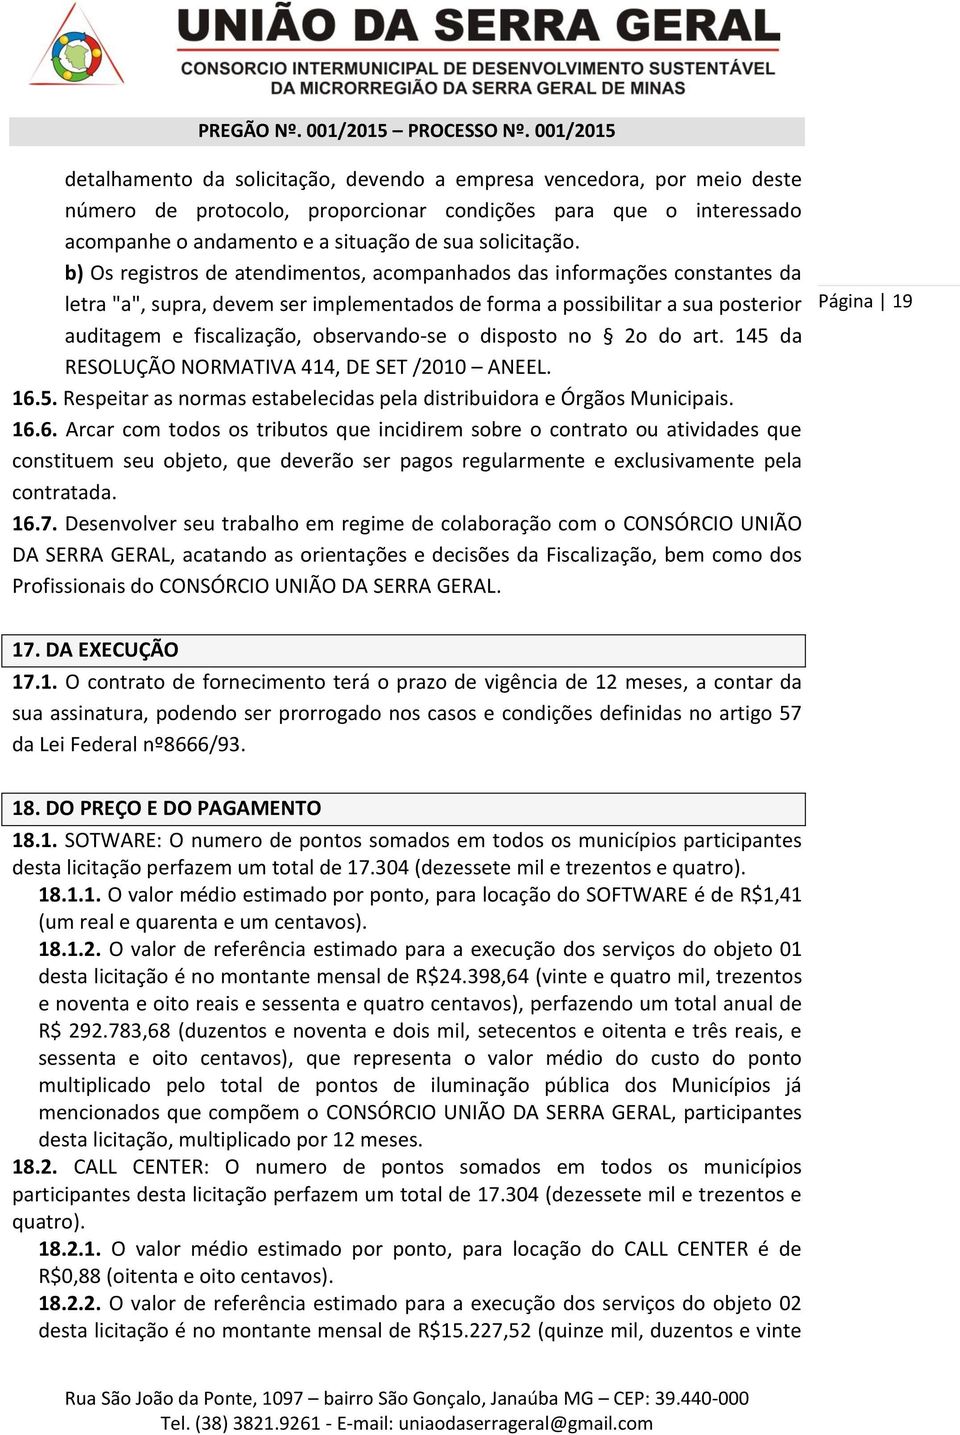 disposto no 2o do art. 145 da RESOLUÇÃO NORMATIVA 414, DE SET /2010 ANEEL. 16.